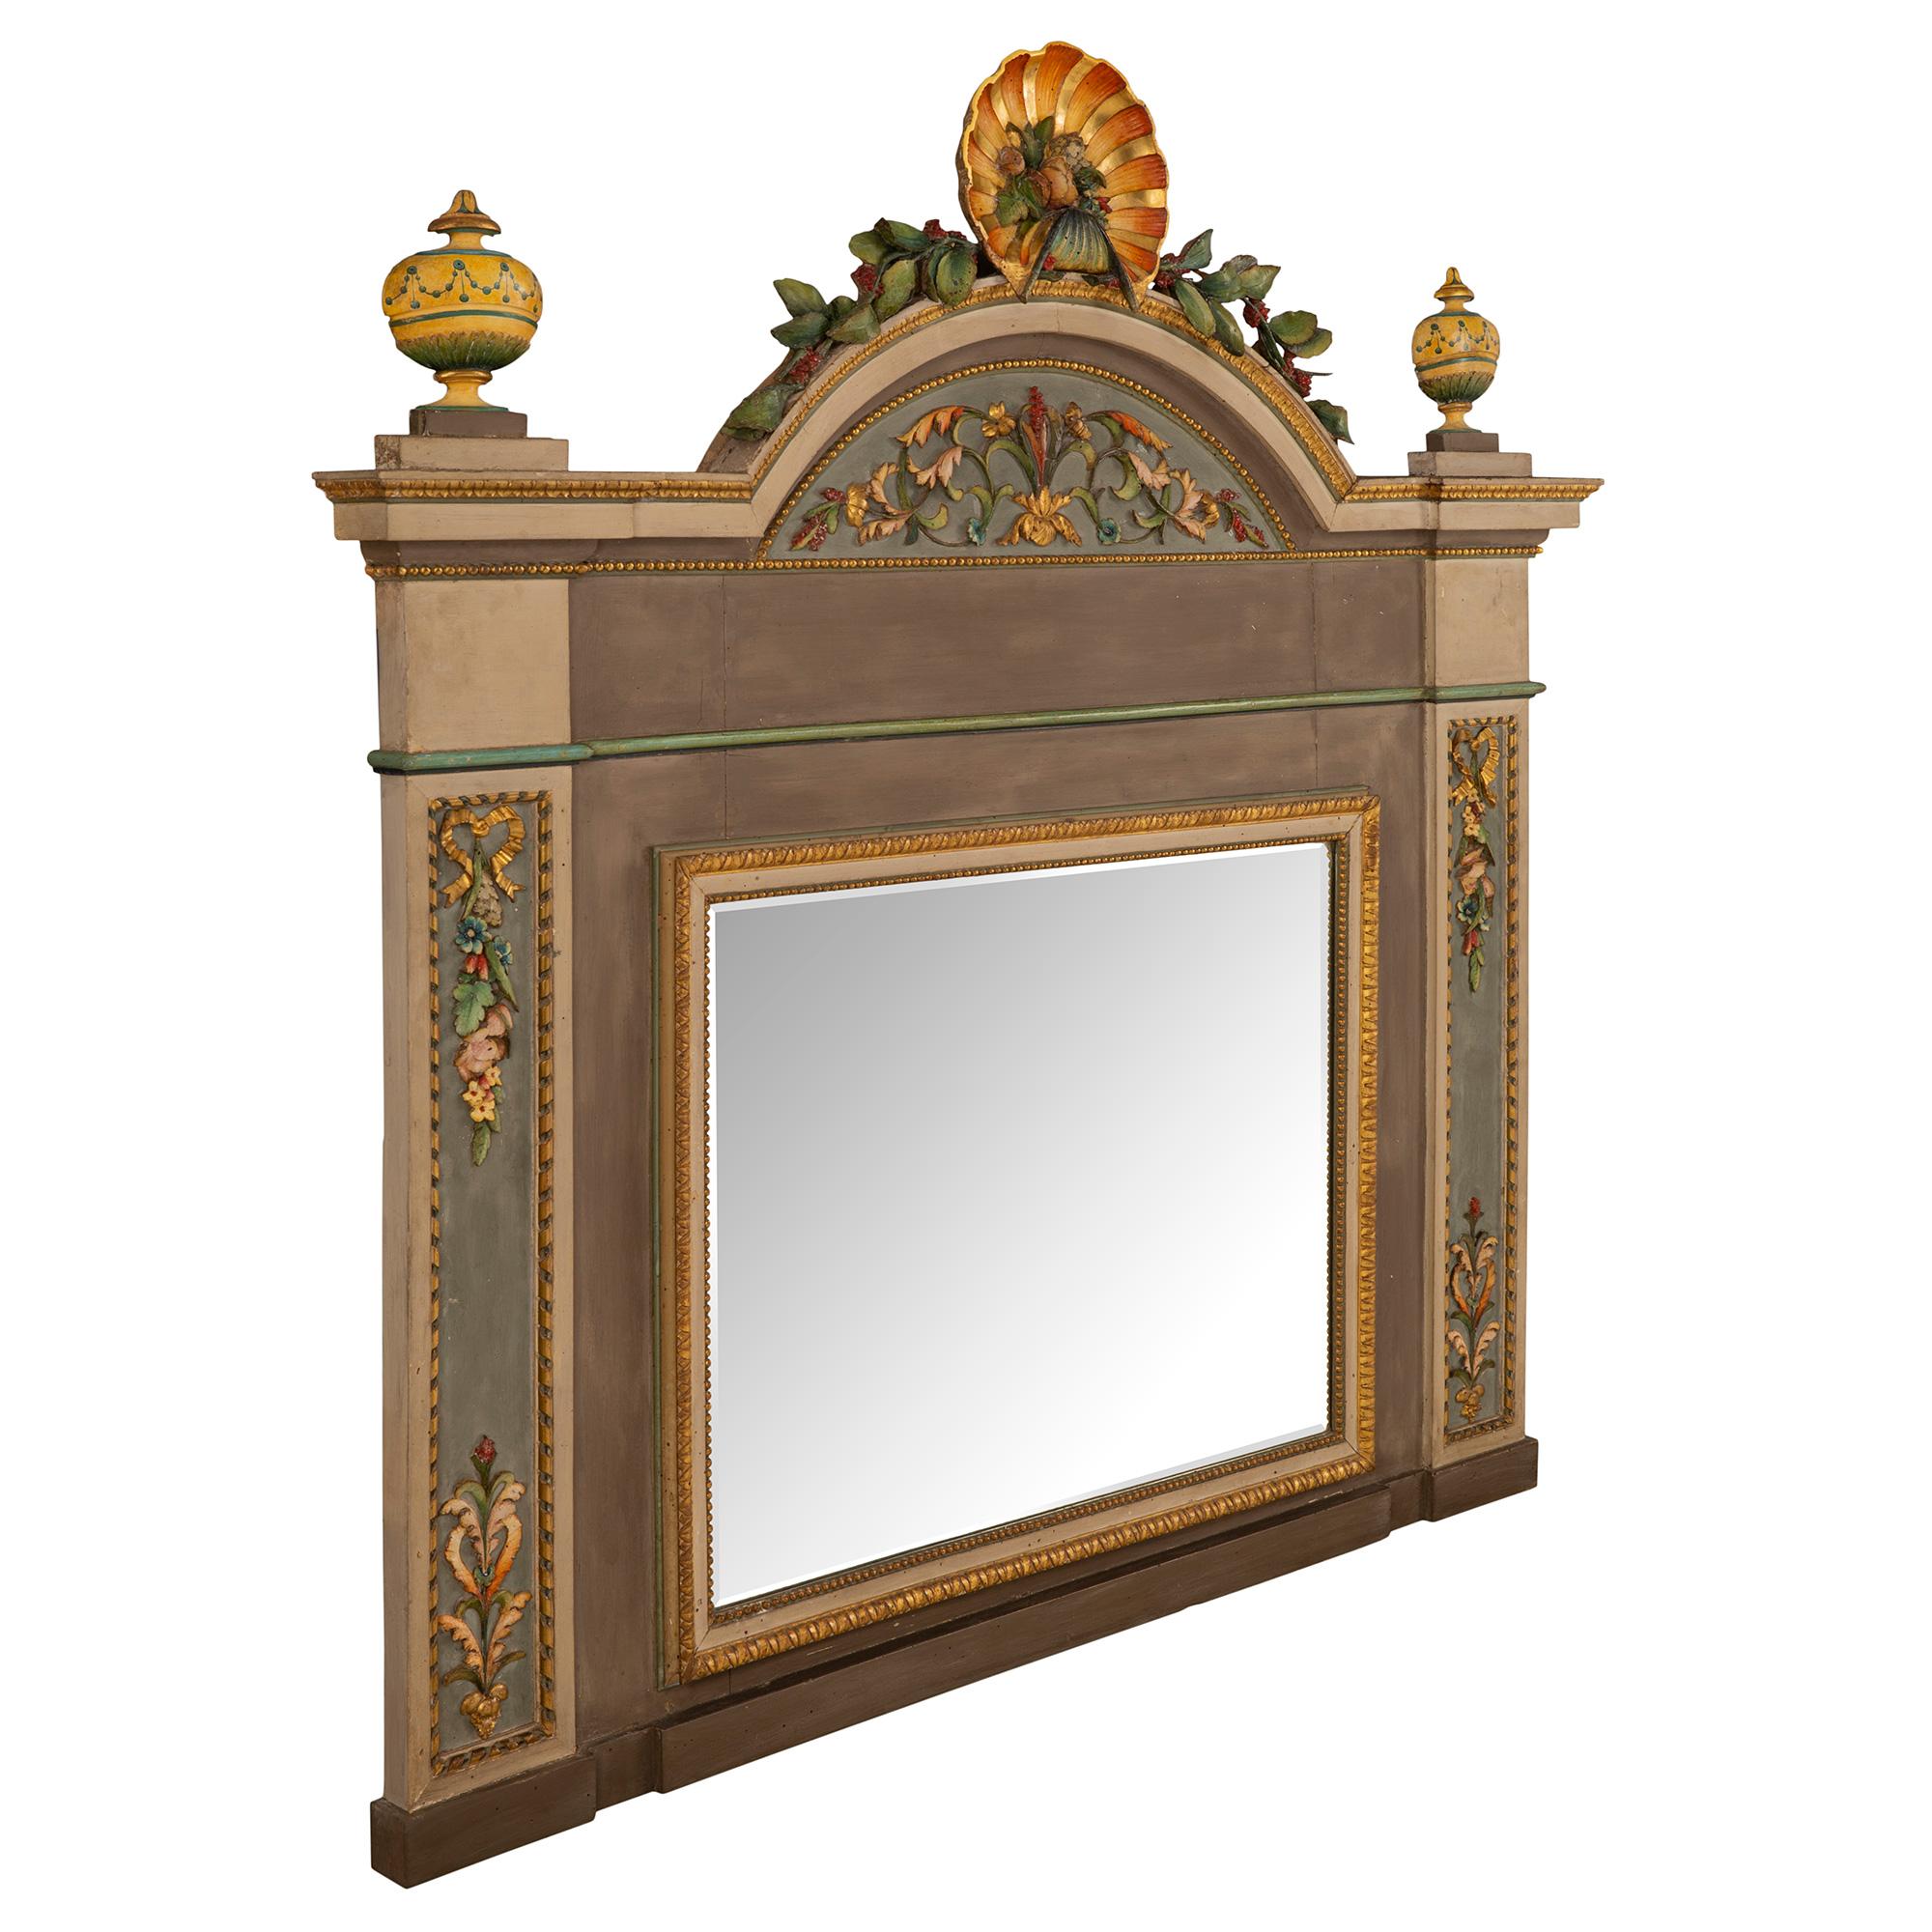 Ein schöner italienischer Spiegel aus dem 18. Jahrhundert, patiniert und vergoldet, aus Mailand. Die originale, abgeschrägte Spiegelplatte ist von einer schönen, mit Perlen und Coeur de Rai gestalteten Bordüre umrahmt. Am Sockel befindet sich ein